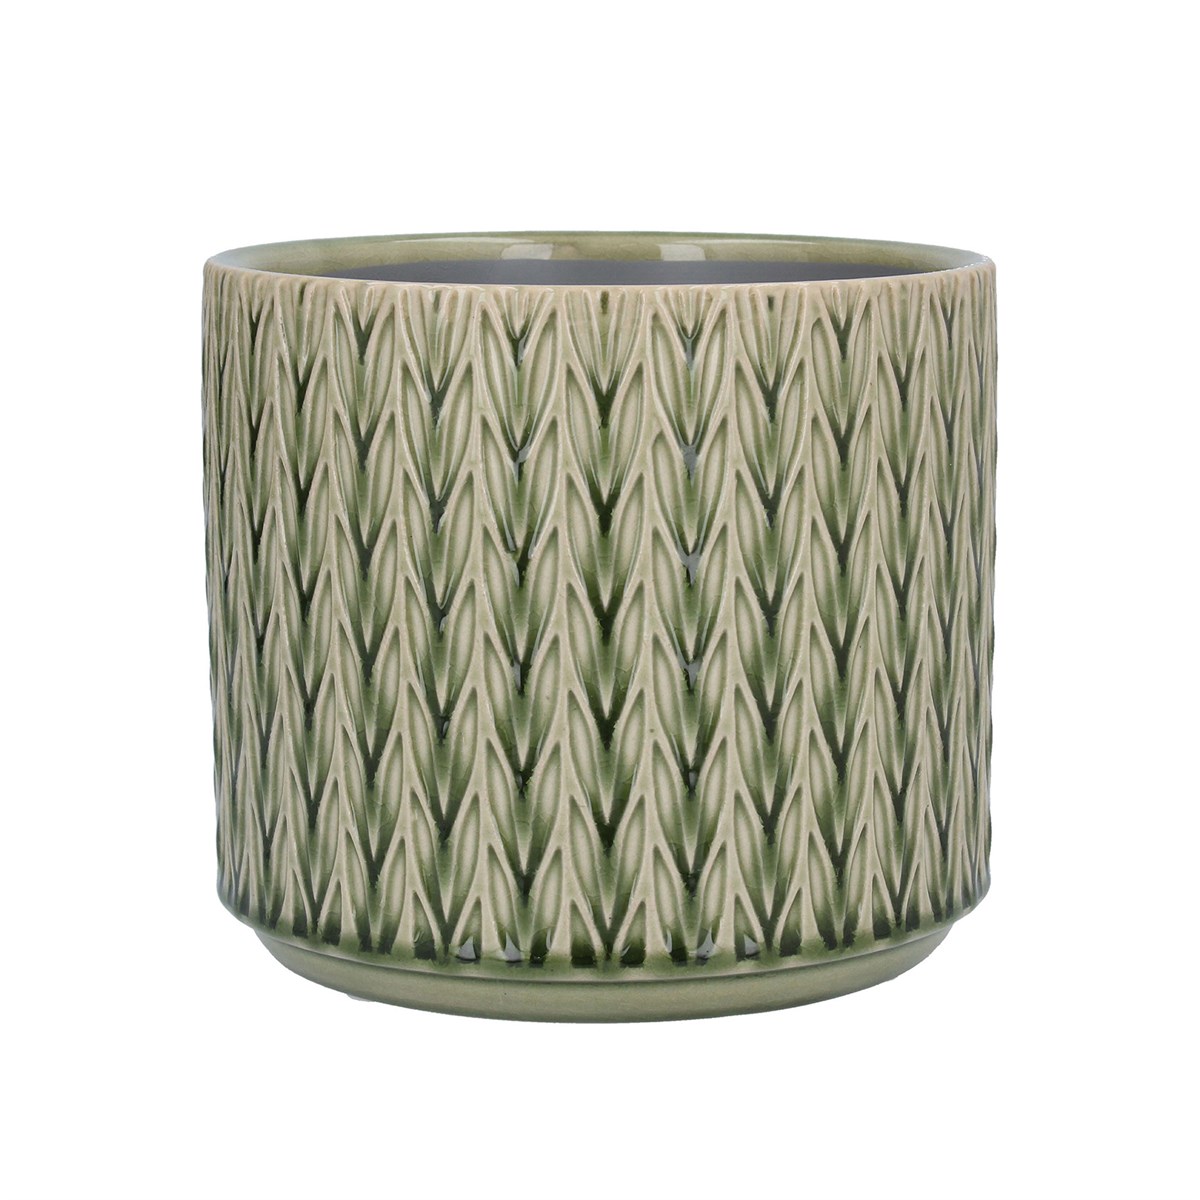 Gisela Graham Green Staghorn Ceramic Pot Cover, Medium